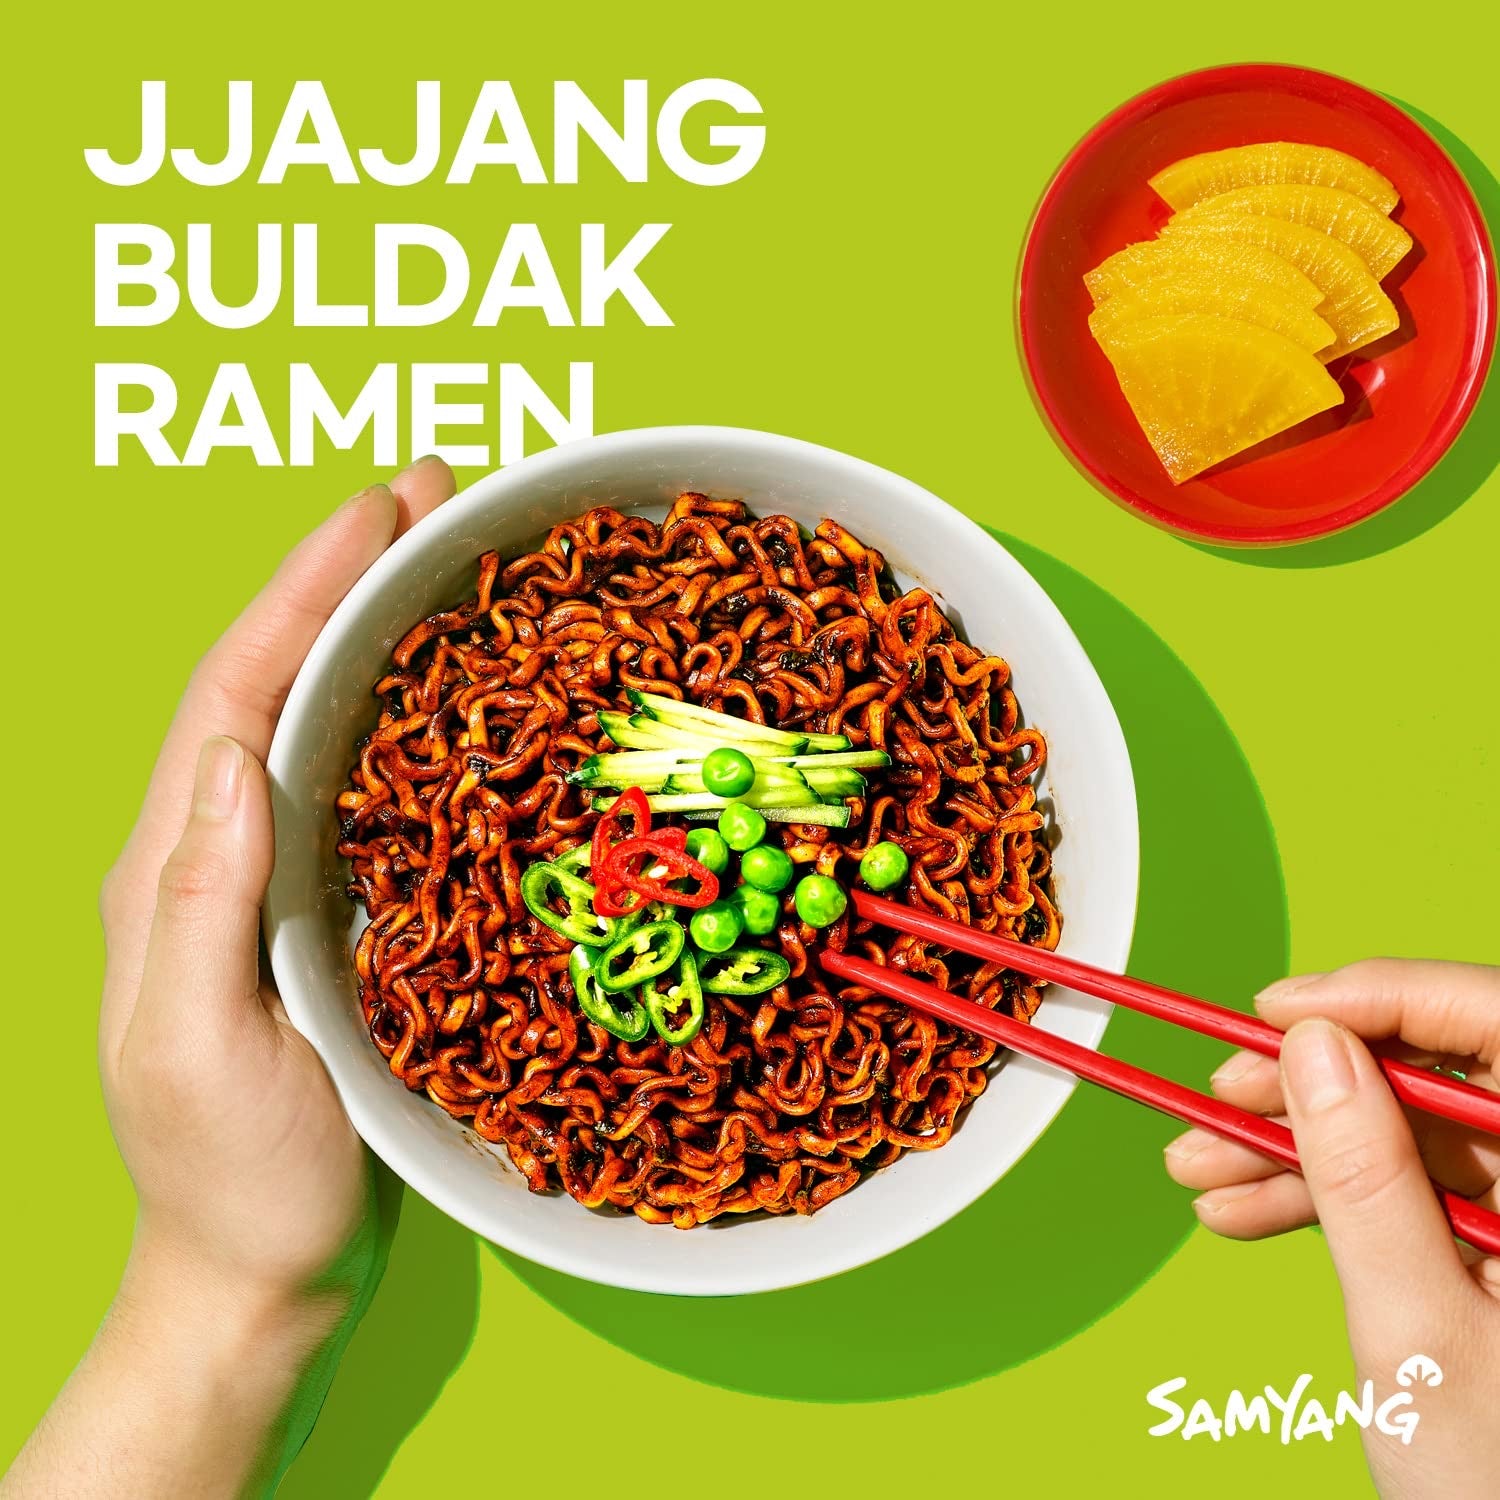 Samyang Jjajang Ramen con sabor a pollo caliente - Paquete de 5